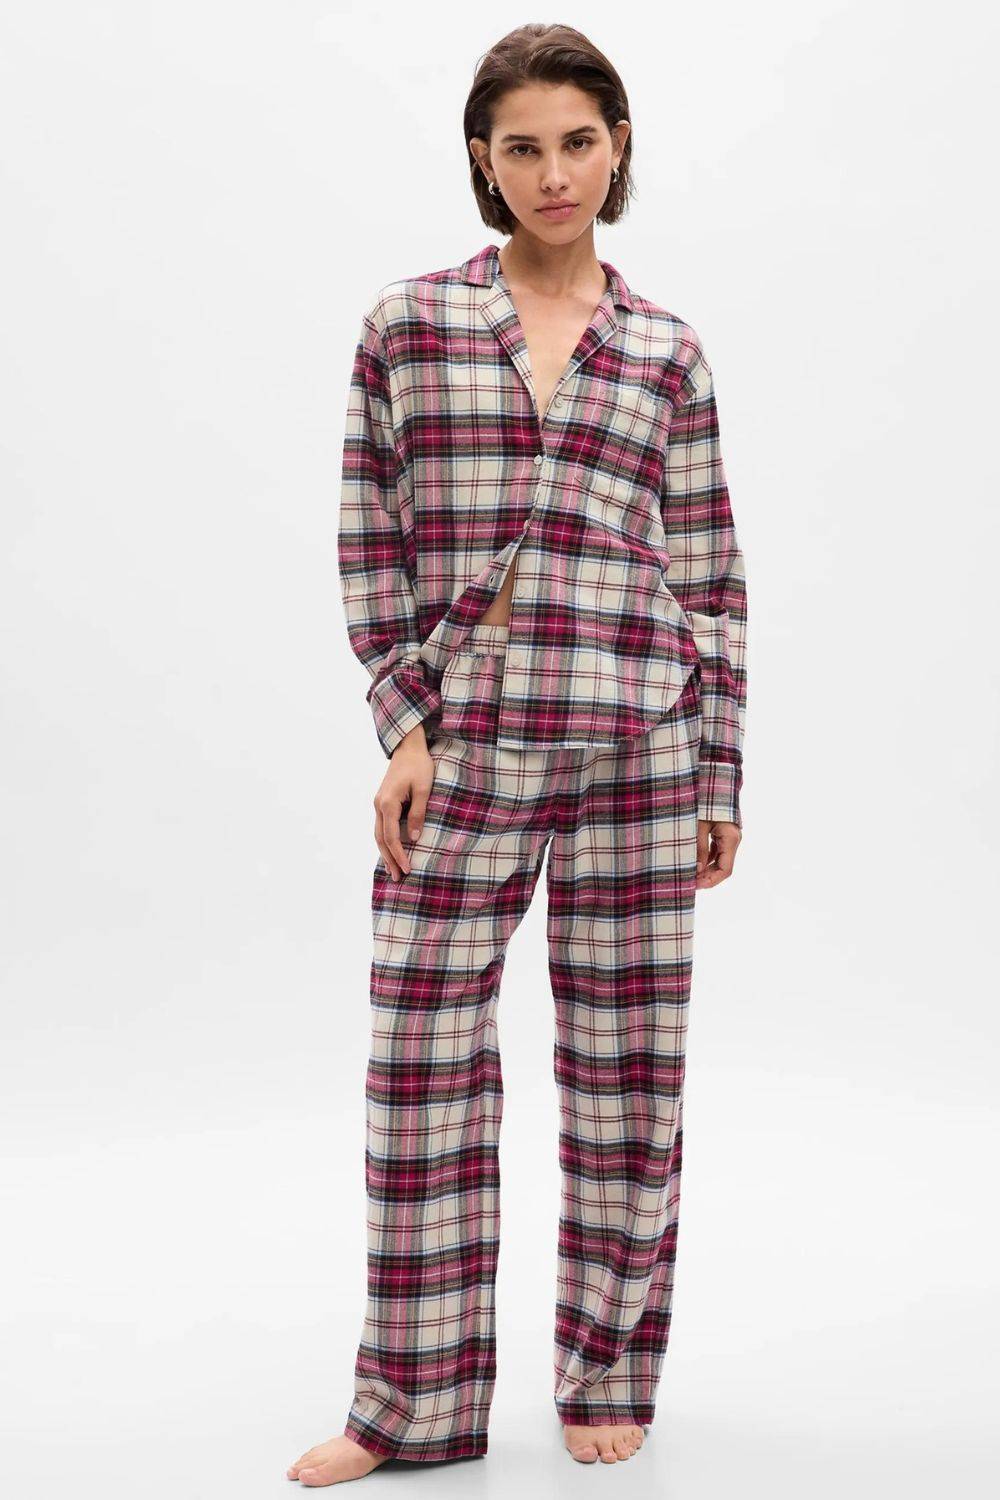 Bawełniana piżama świąteczna, Gap, 369 zł (Fot. materiały prasowe)